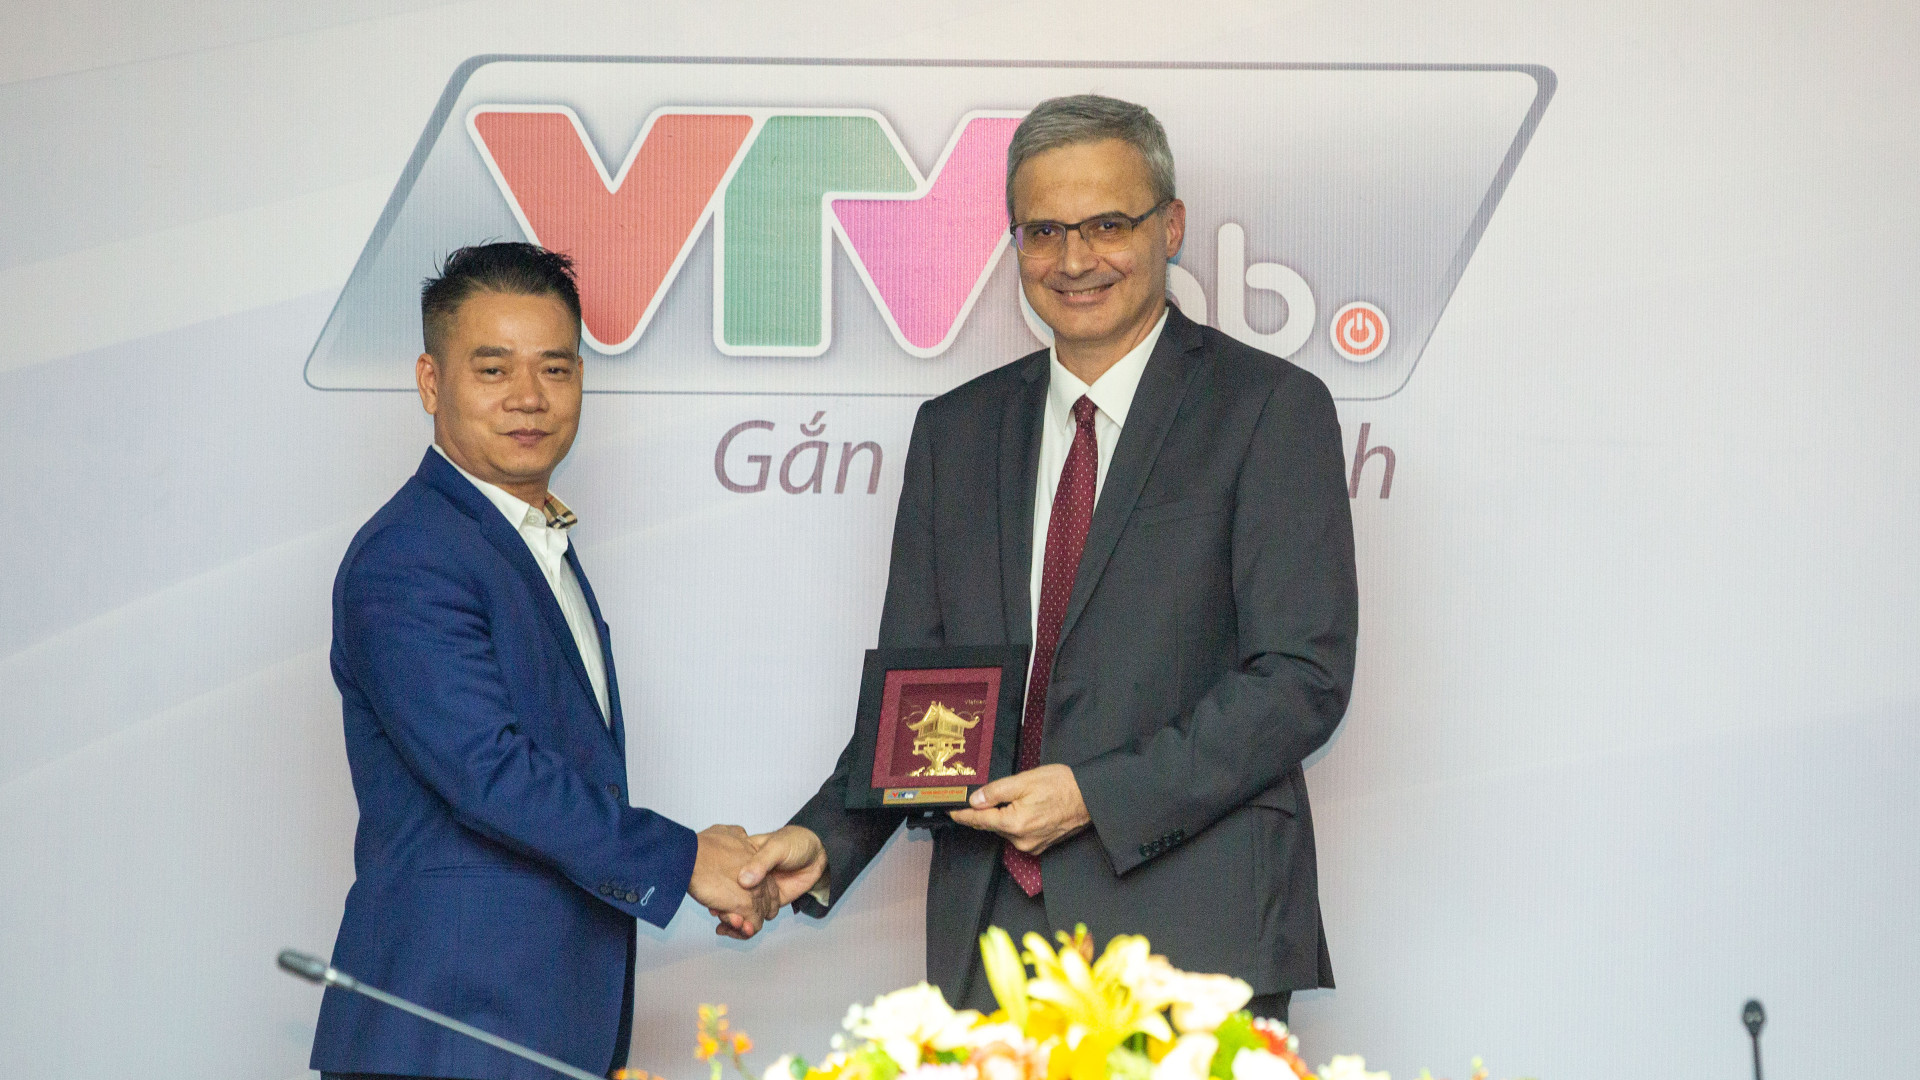 VTVcab vinh dự chào đón và làm việc với Đại sứ Pháp tại Việt Nam